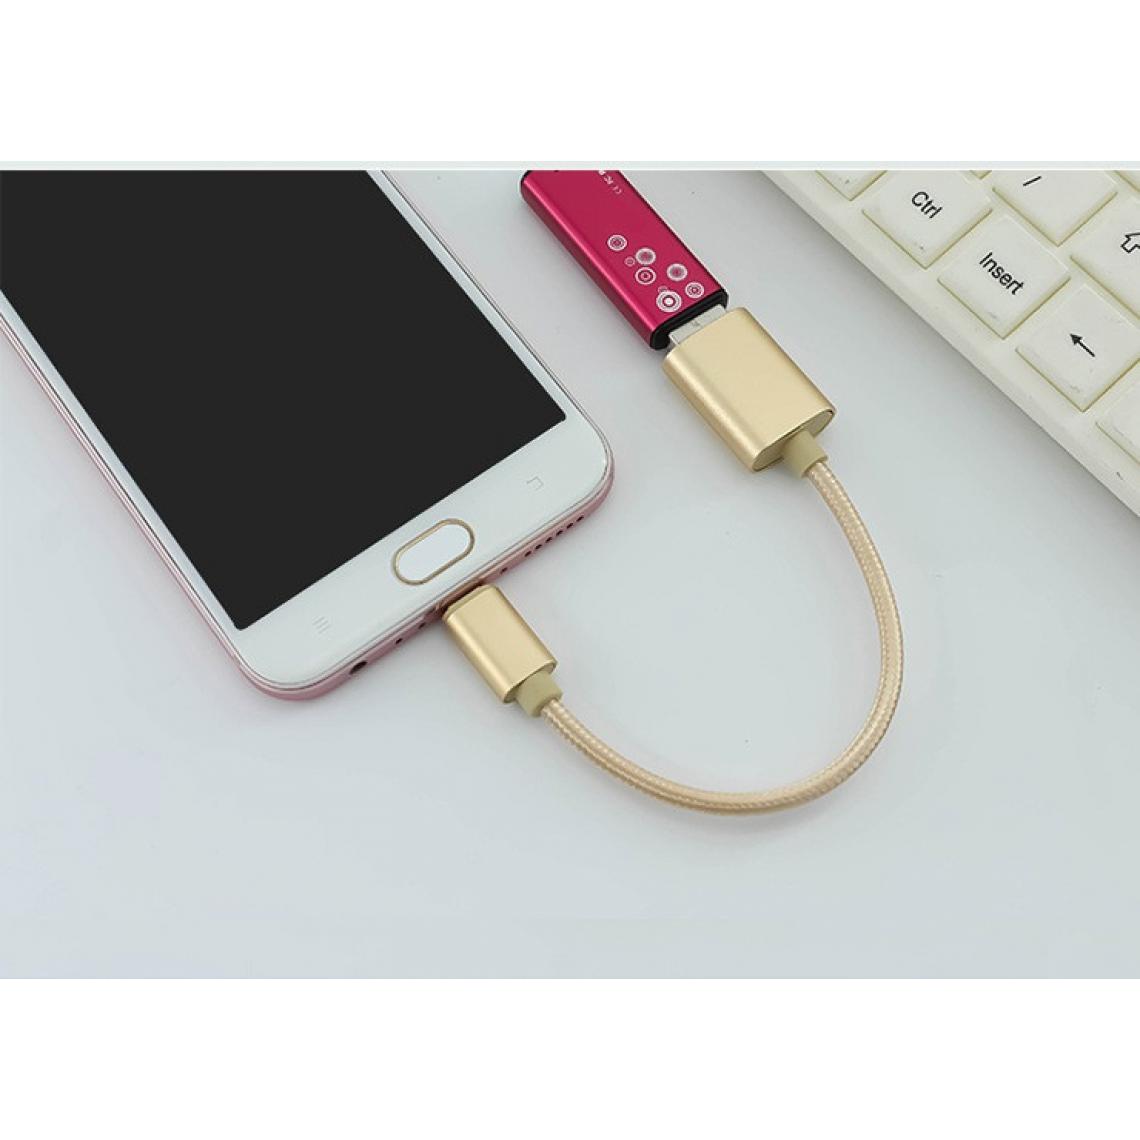 Shot - Adaptateur Type C/USB pour "WIKO View 5 Plus" Smartphone & MAC USB-C Clef (OR) - Autres accessoires smartphone